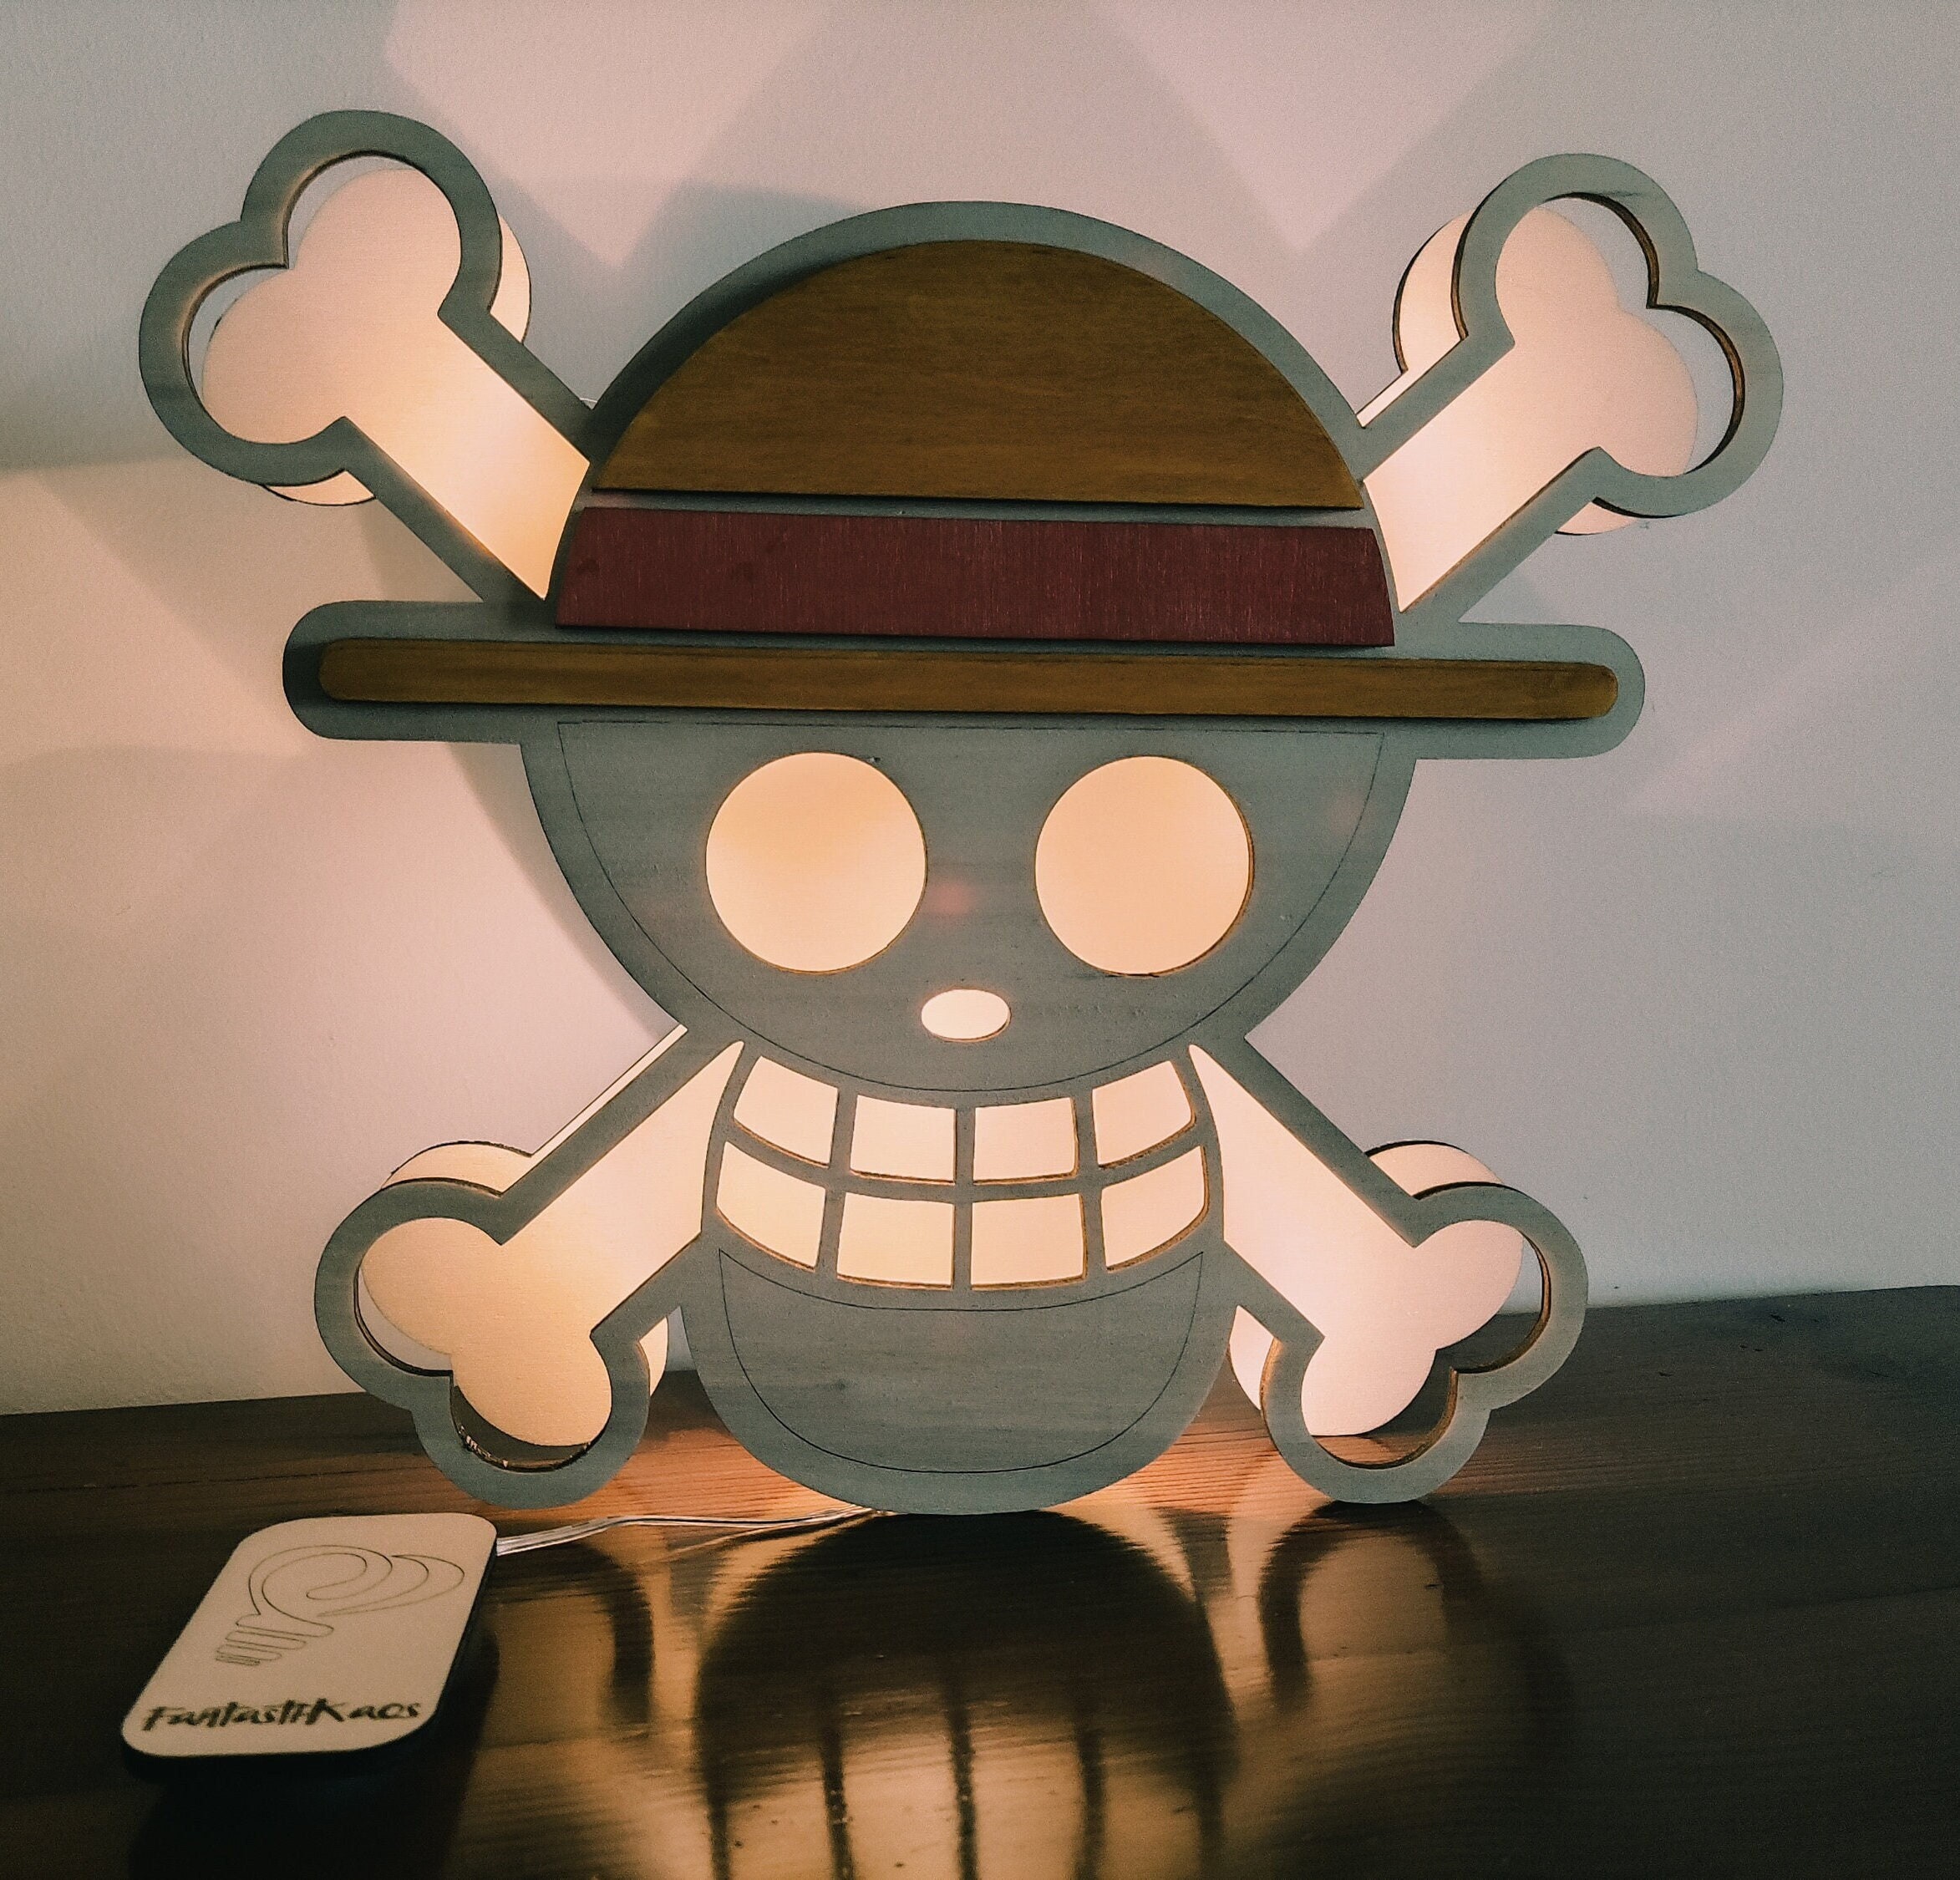  Emblème One Piece, luffy, mugiwara, lampe led, lampe  3d, veilleuse, lampe personnalisable, éclairage, illusion, idée cadeau,  cadeau original